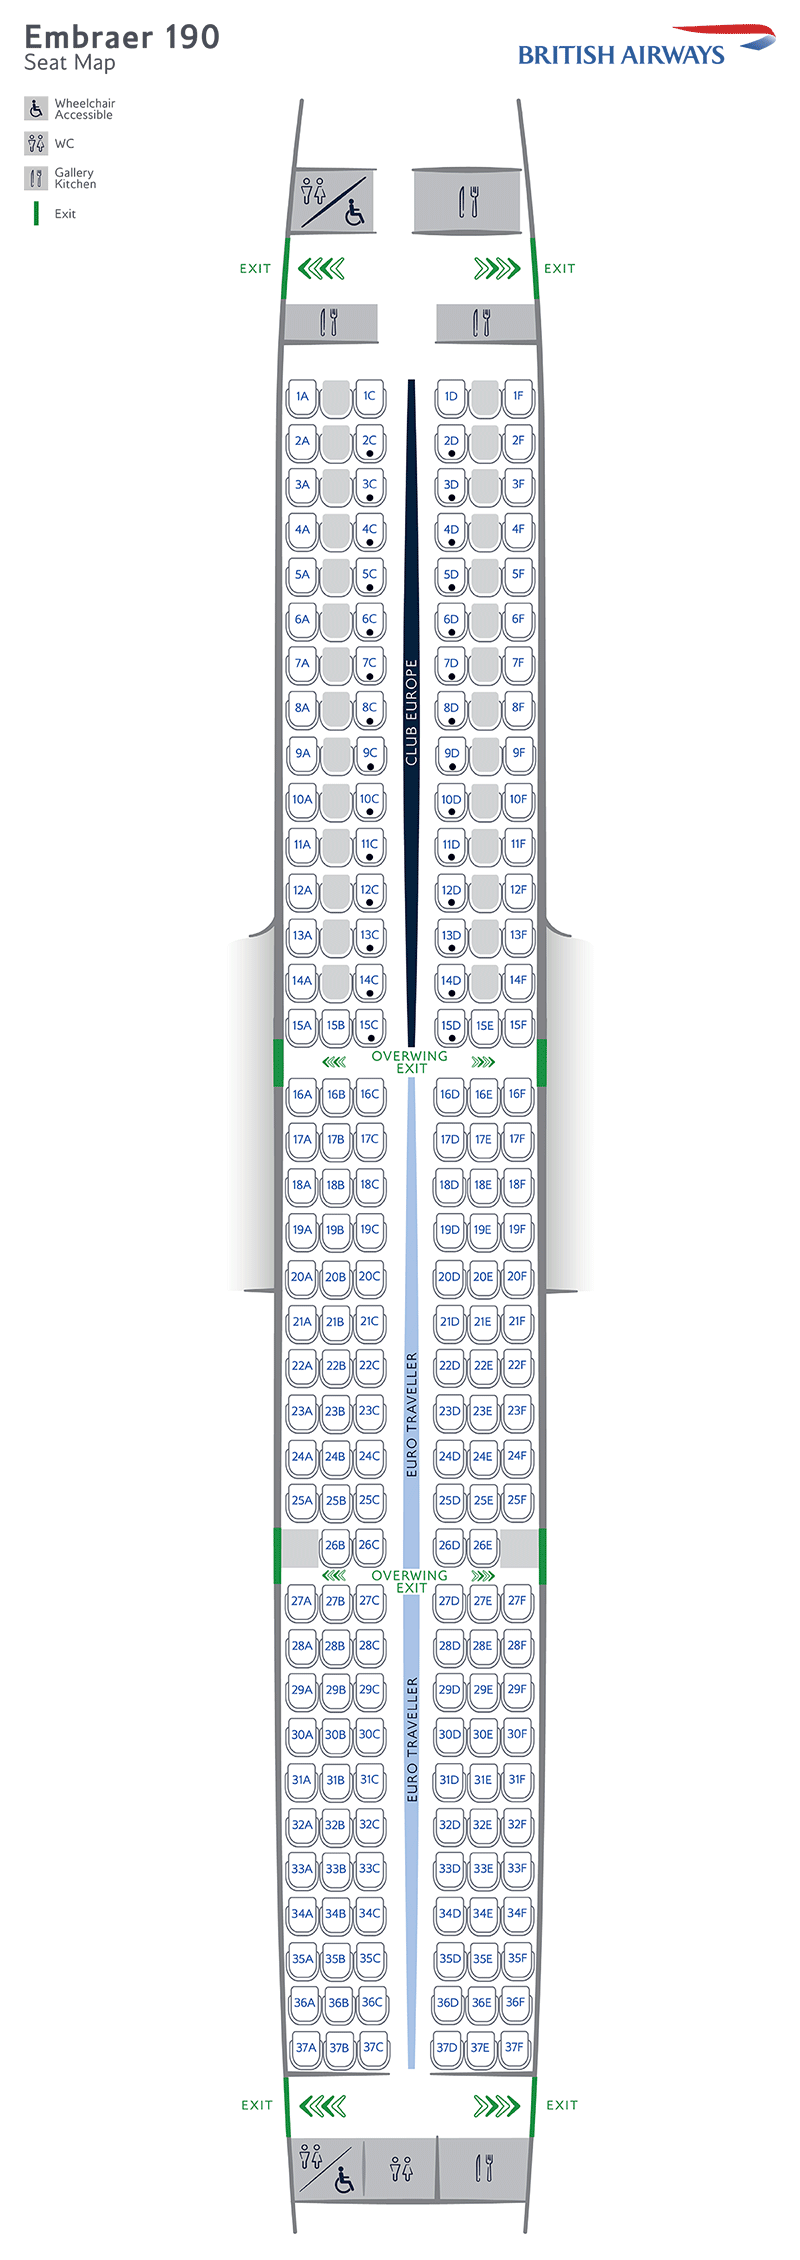 Embraer-190 seatmap